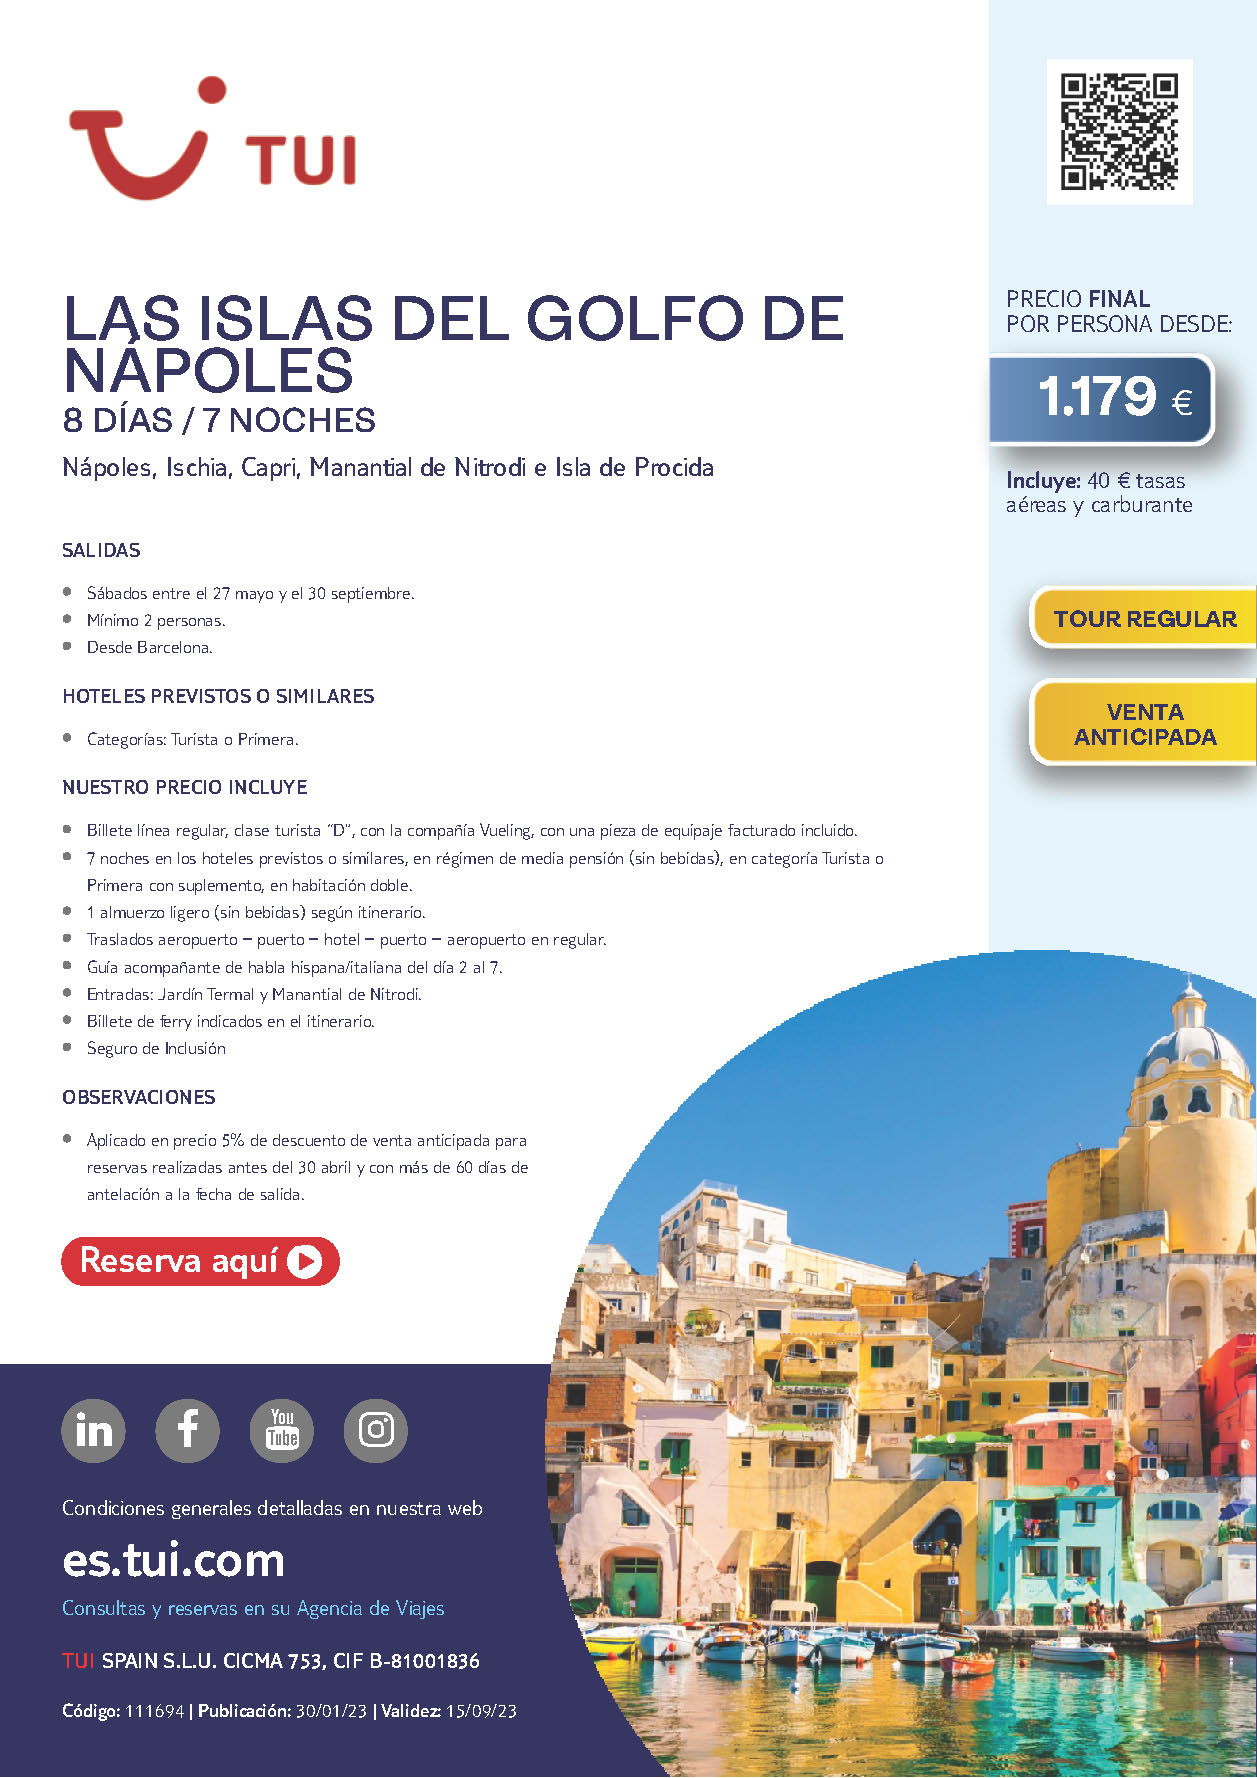 Oferta TUI Italia Las Islas del Golfo de Napoles 8 dias Mayo a Septiembre 2023 salidas desde Barcelona vuelos Vueling